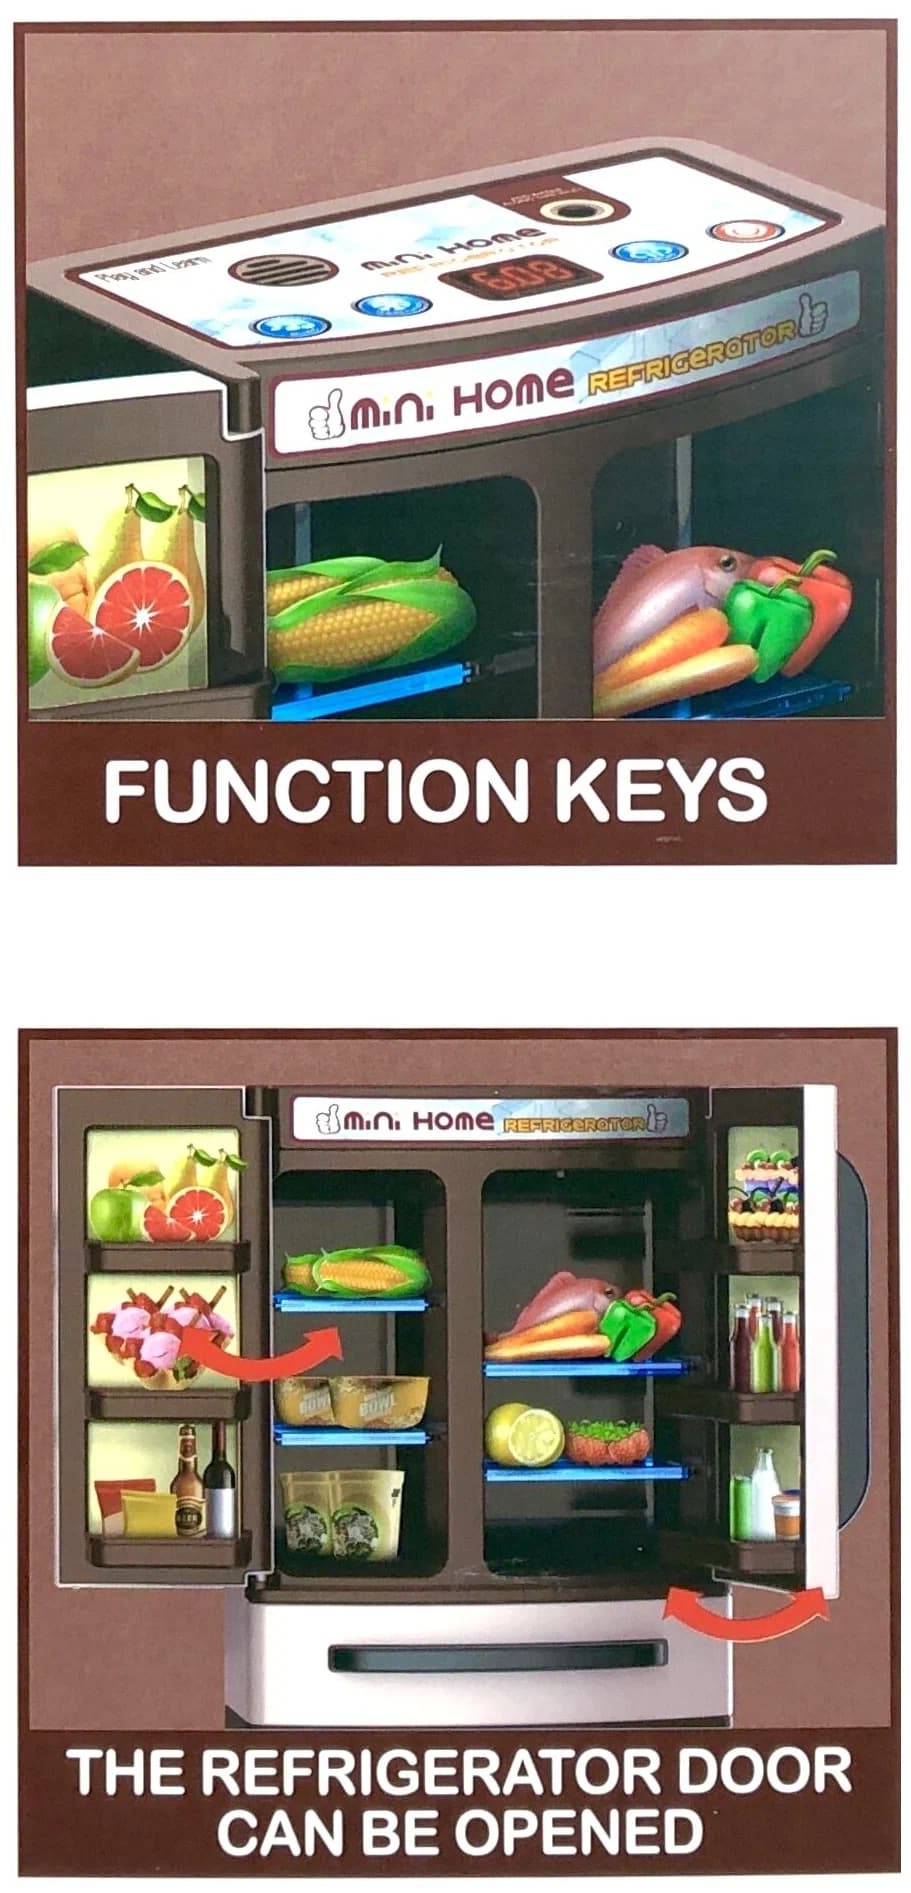 Набор игрушечной бытовой техники «Холодильник» со световыми и звуковыми эффектами / 6748A